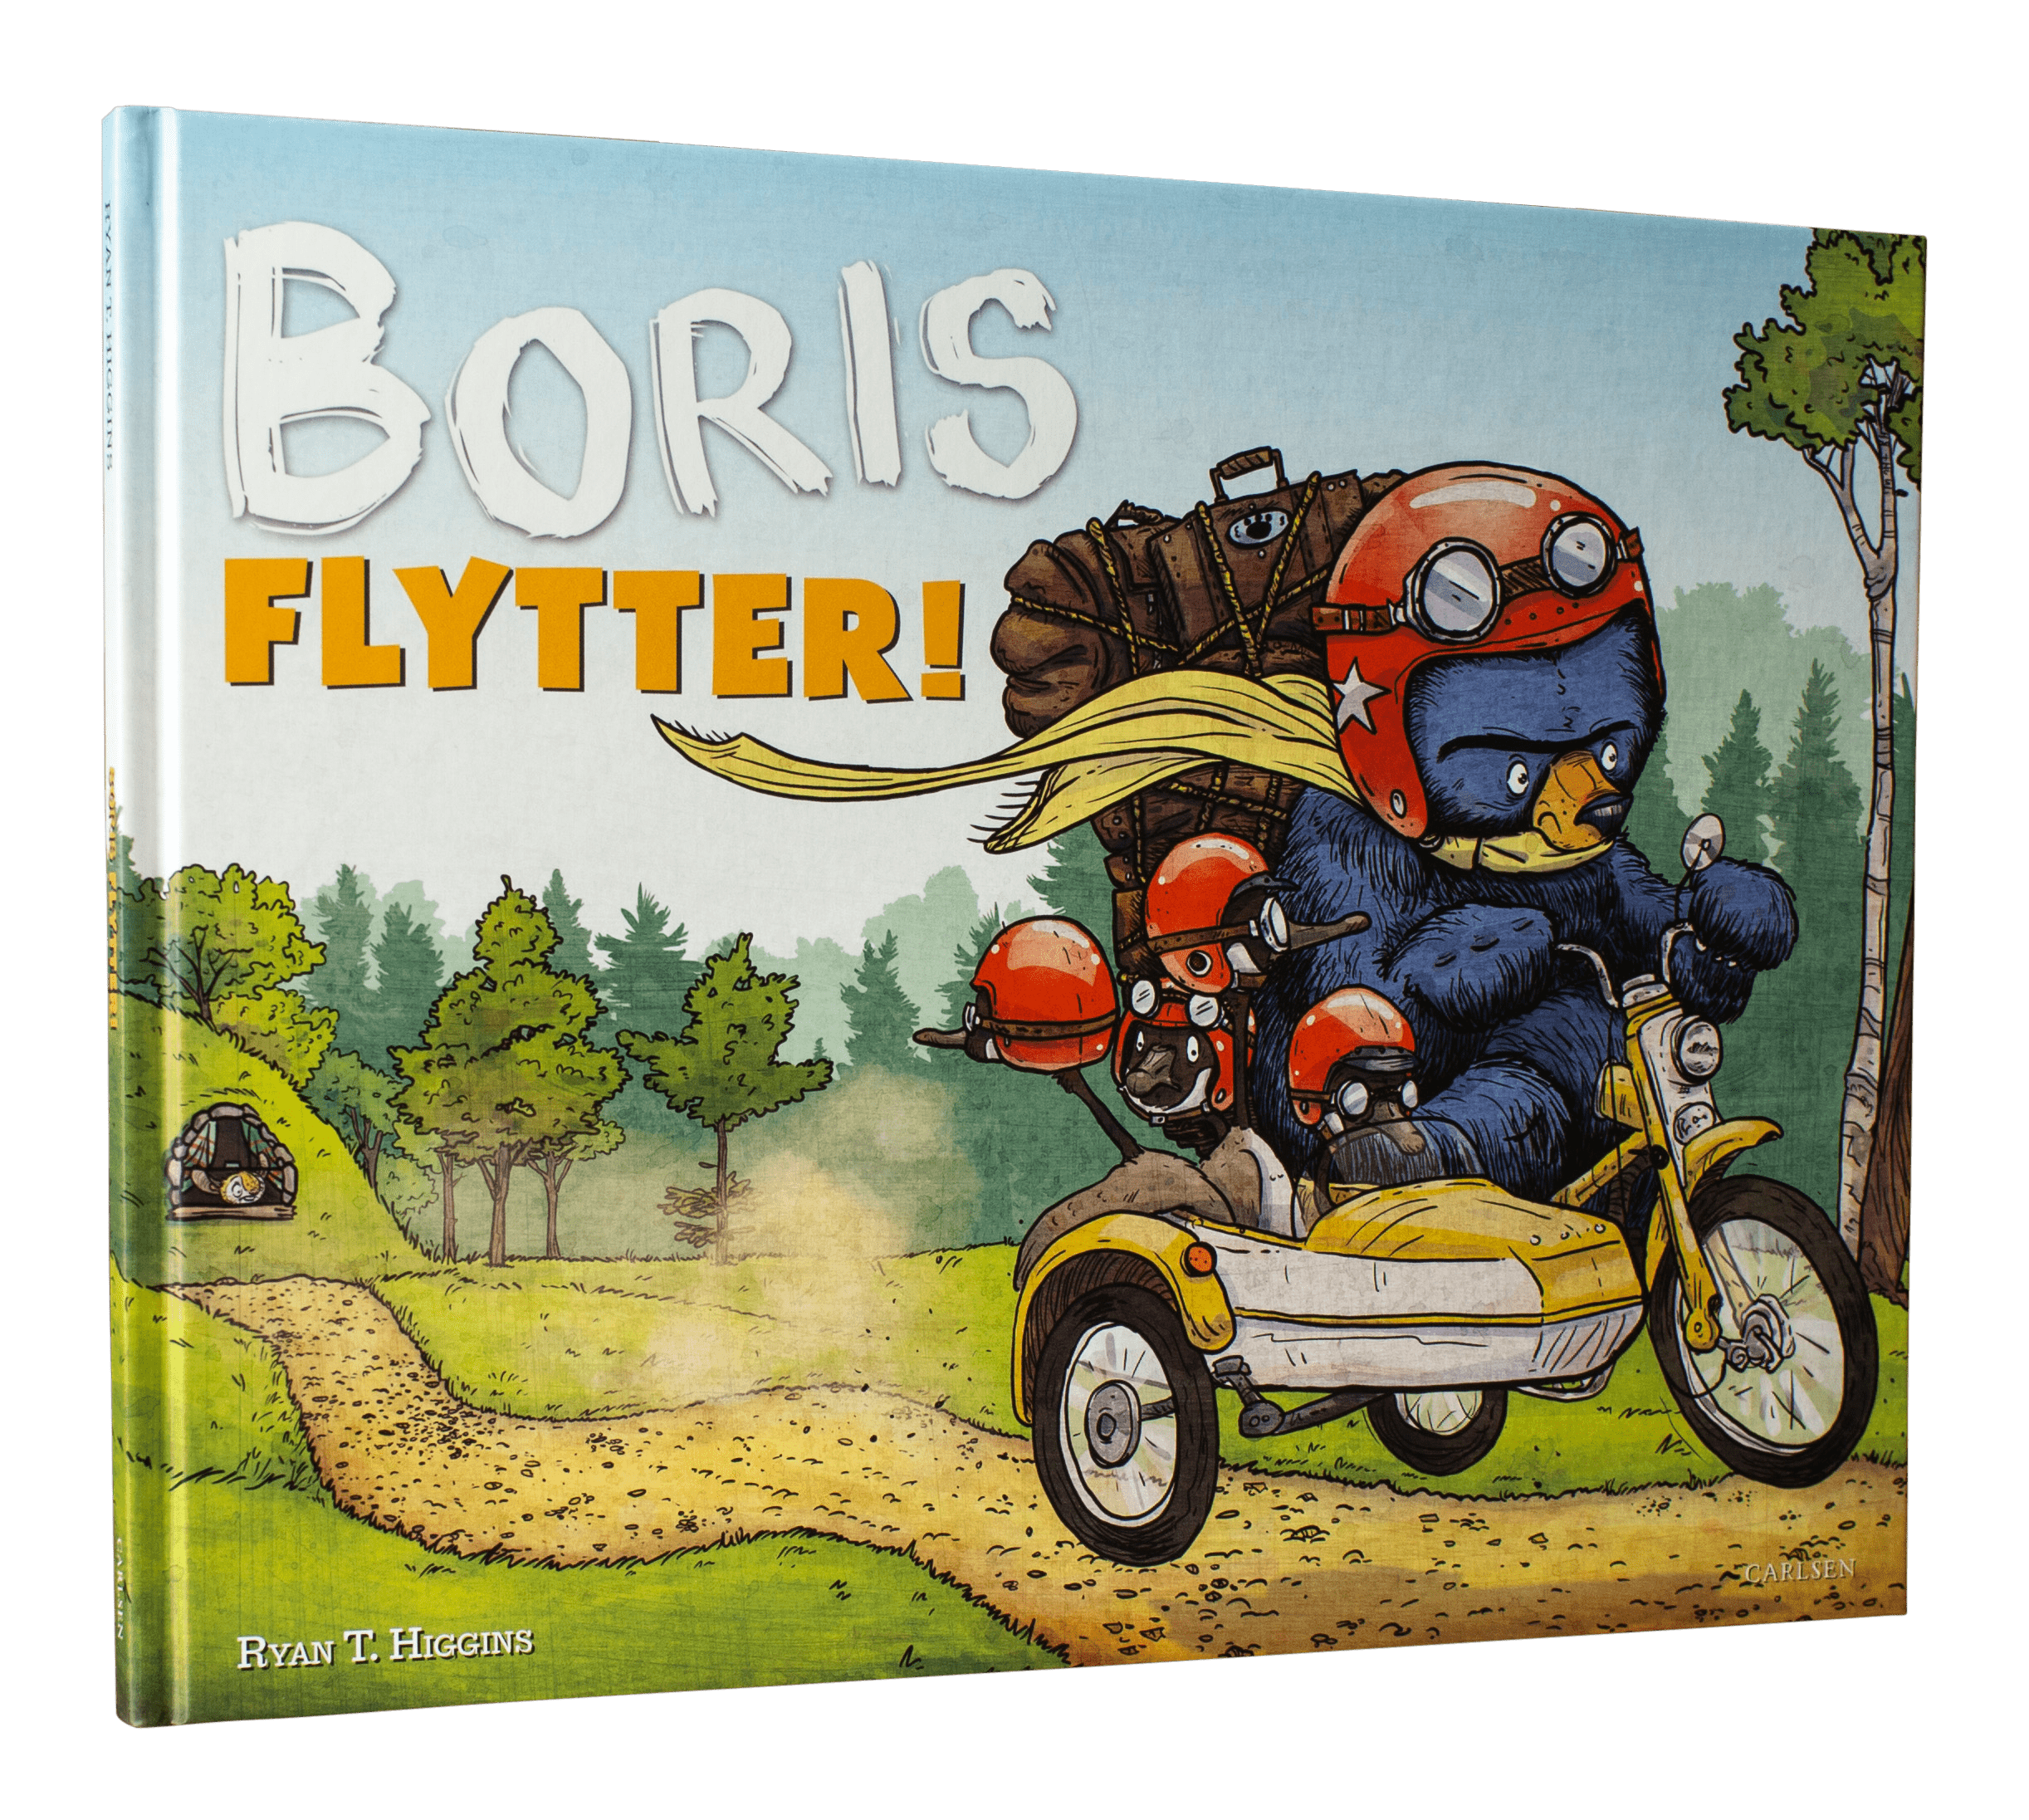 Boris flytter, boris, billedbøger, billedbog, højtlæsning, dialogisk læsning, ryan t. higgins